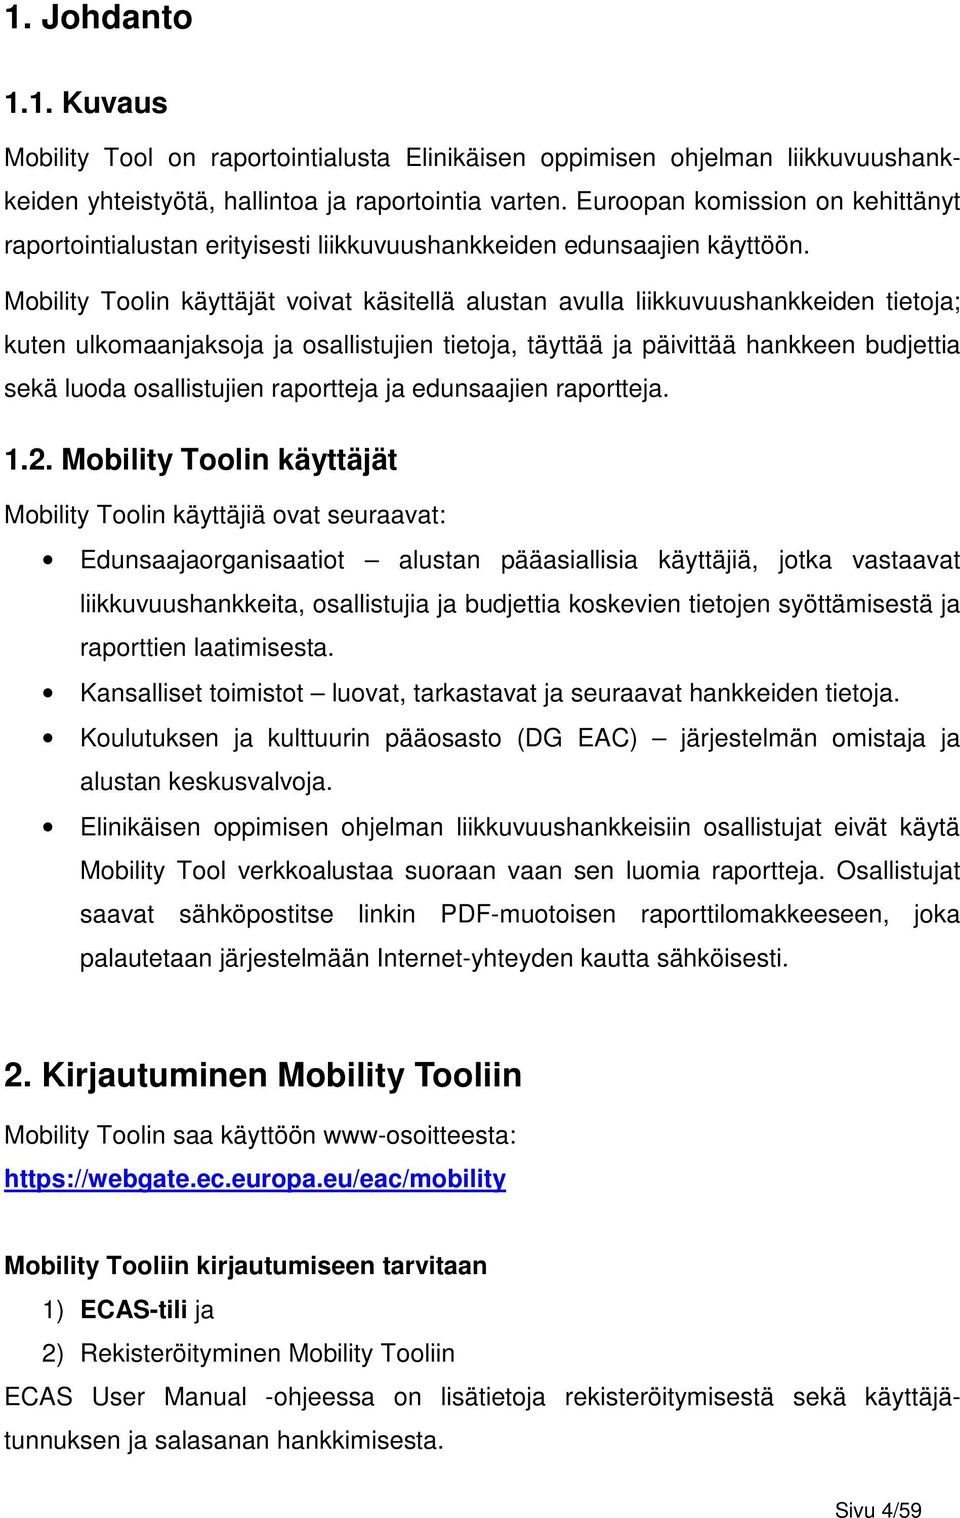 Mobility Toolin käyttäjät voivat käsitellä alustan avulla liikkuvuushankkeiden tietoja; kuten ulkomaanjaksoja ja osallistujien tietoja, täyttää ja päivittää hankkeen budjettia sekä luoda